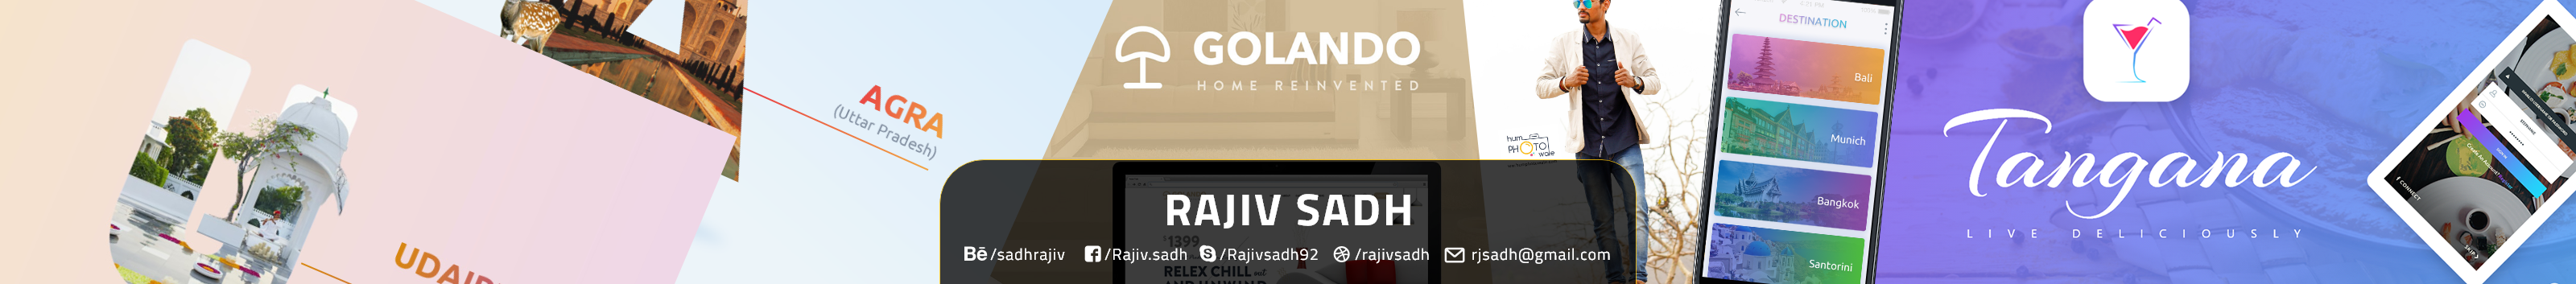 Rajiv Sadh のプロファイルバナー